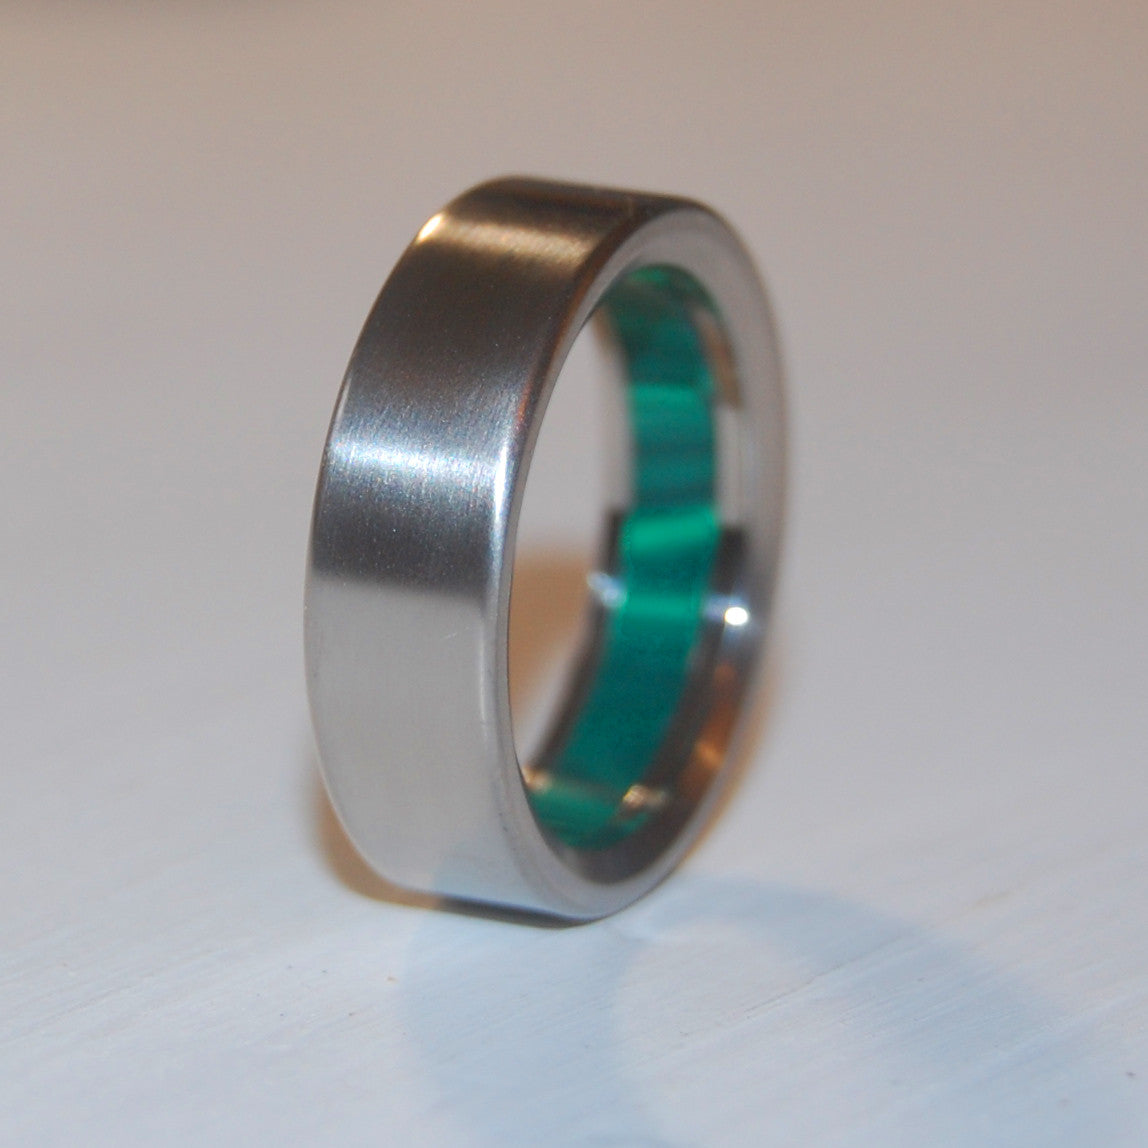 OZ | Malachite Stone & Titanium - Unique Wedding Rings - Titanium Wedding Rings - Minter and Richter Designs